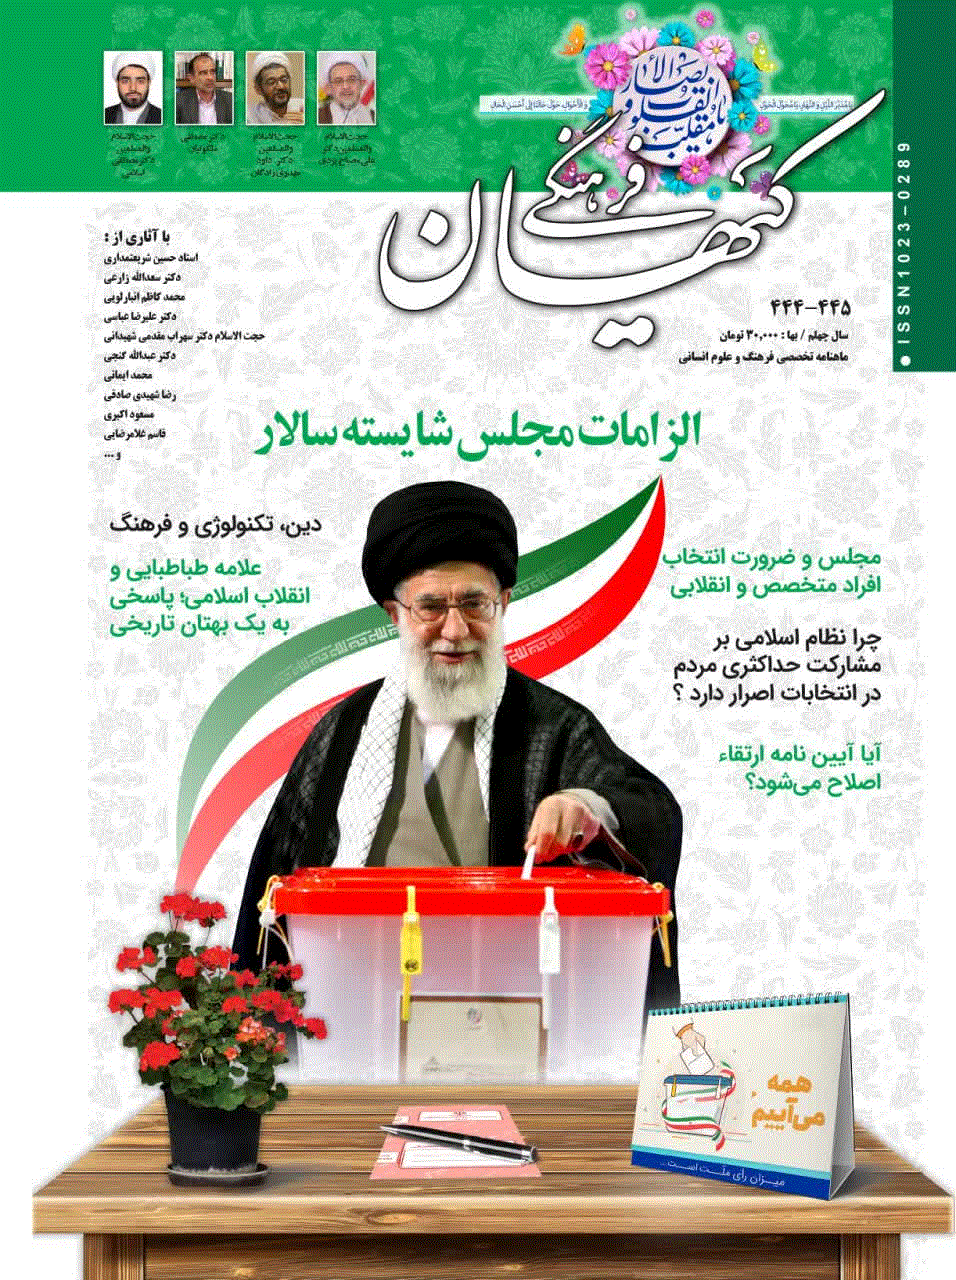 کیهان فرهنگی - تير 1382 - شماره 201